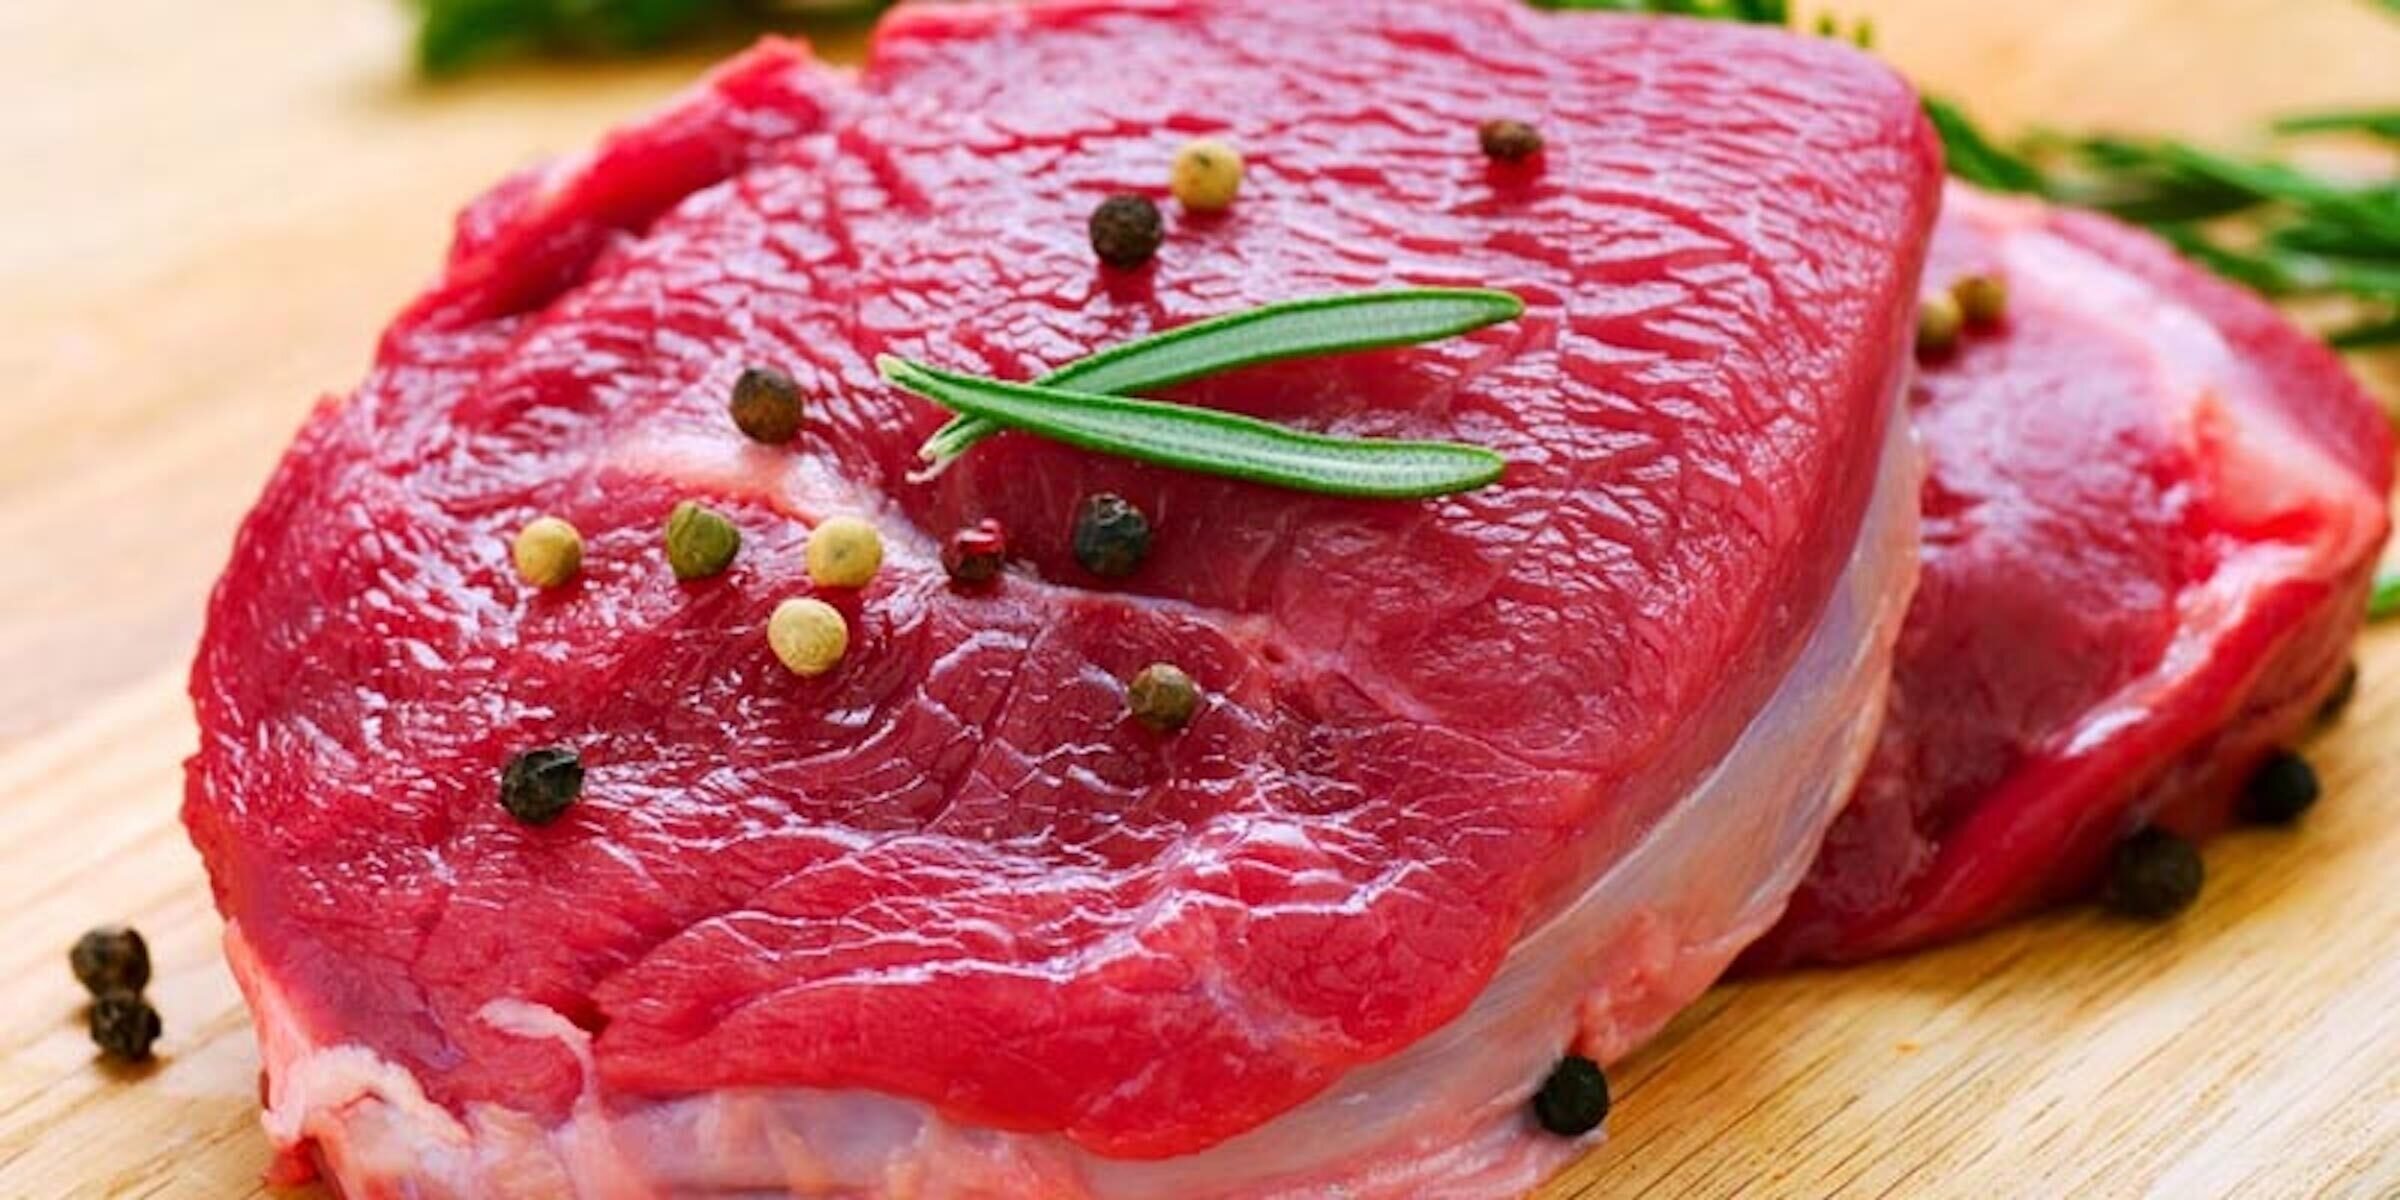 Thịt bò tốt nhưng nếu ăn nhiều và ăn vào buổi tối sẽ khiến cơ thể gặp nhiều vấn đề. (Ảnh minh hoạ)